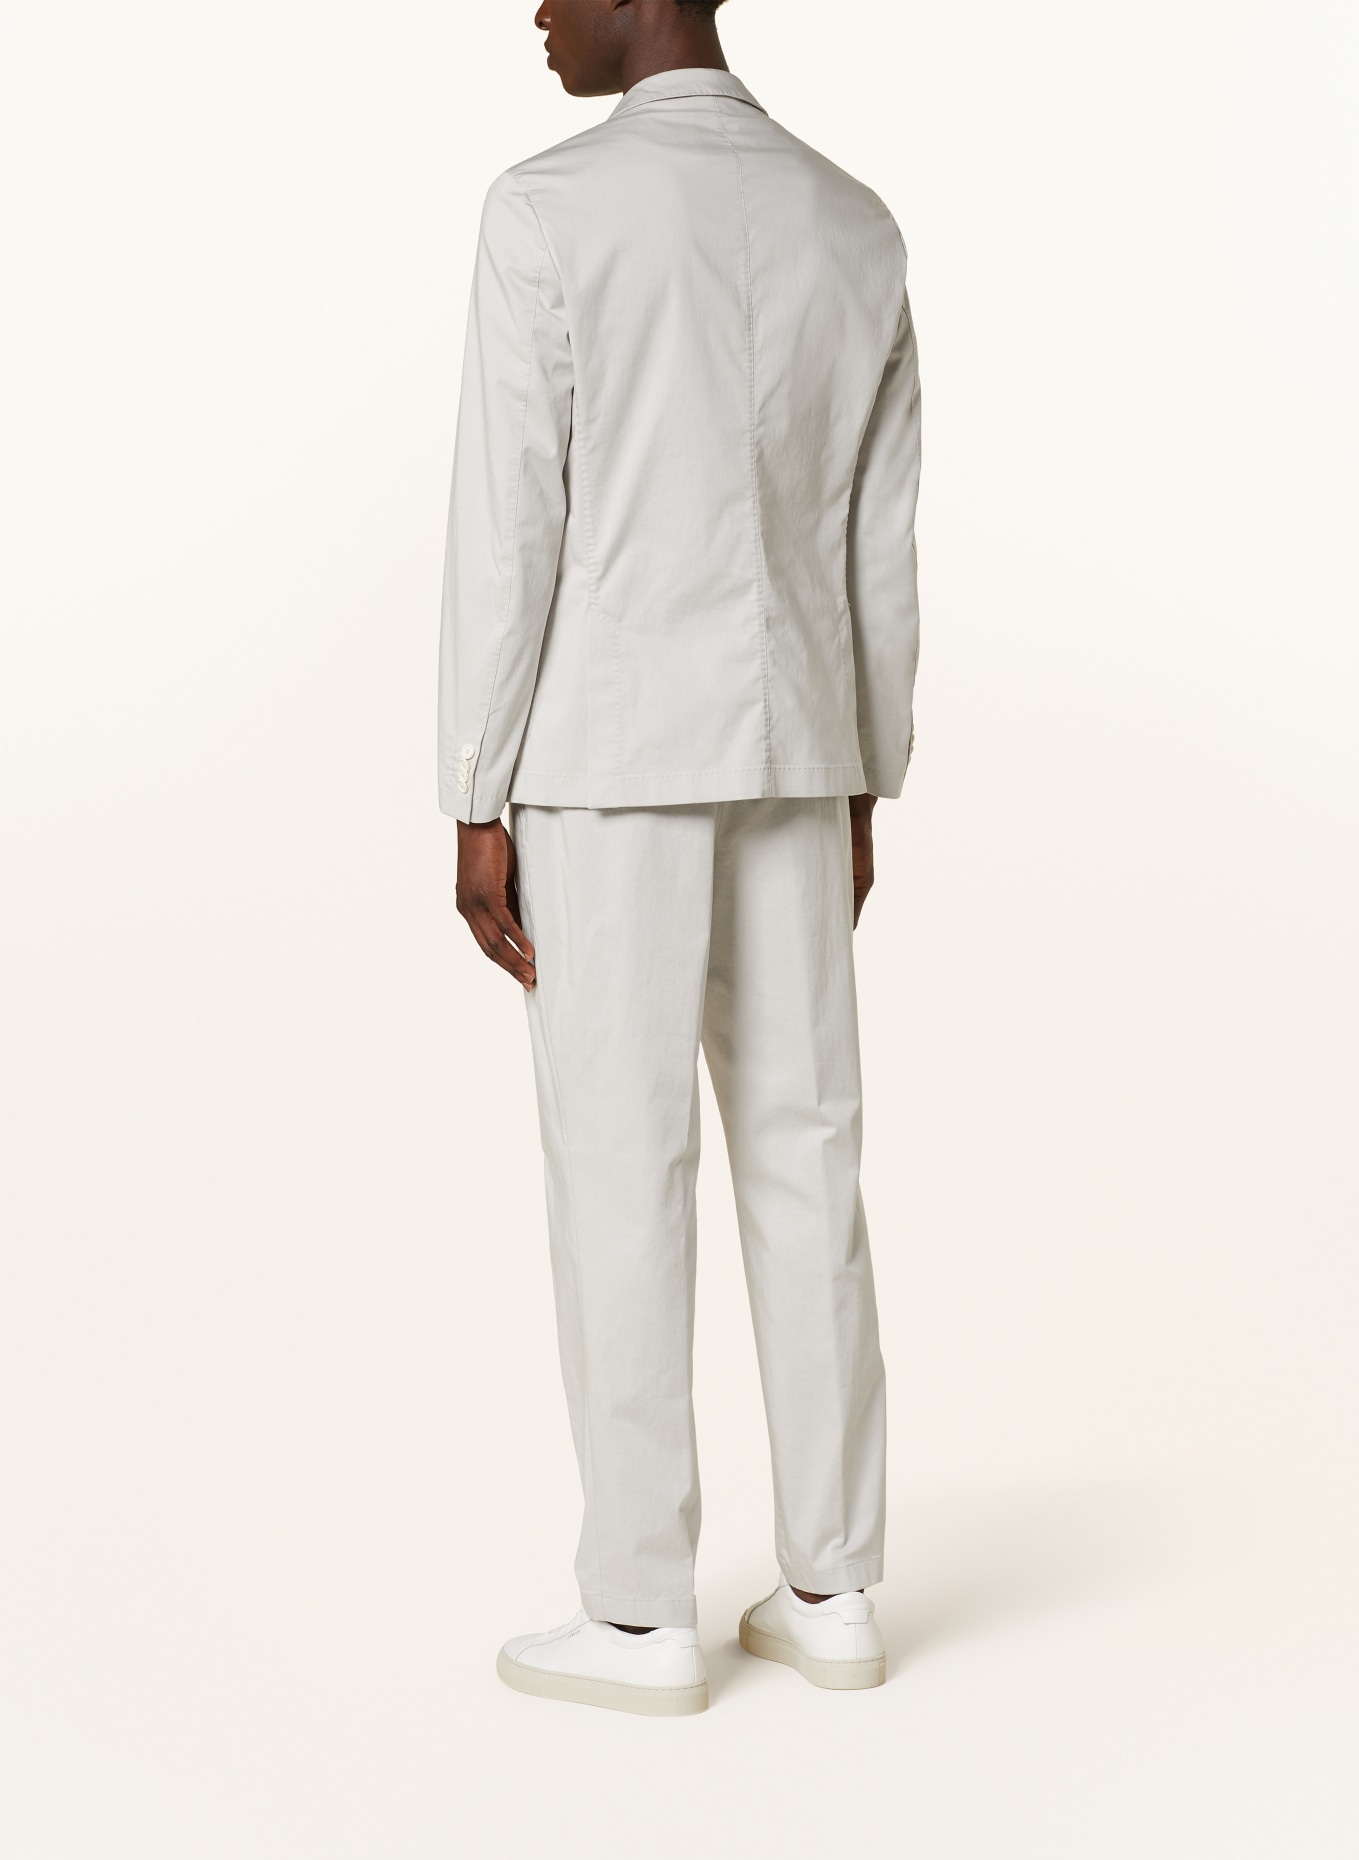 BOSS Anzugsakko HANRY Slim Fit, Farbe: 131 Open White (Bild 3)